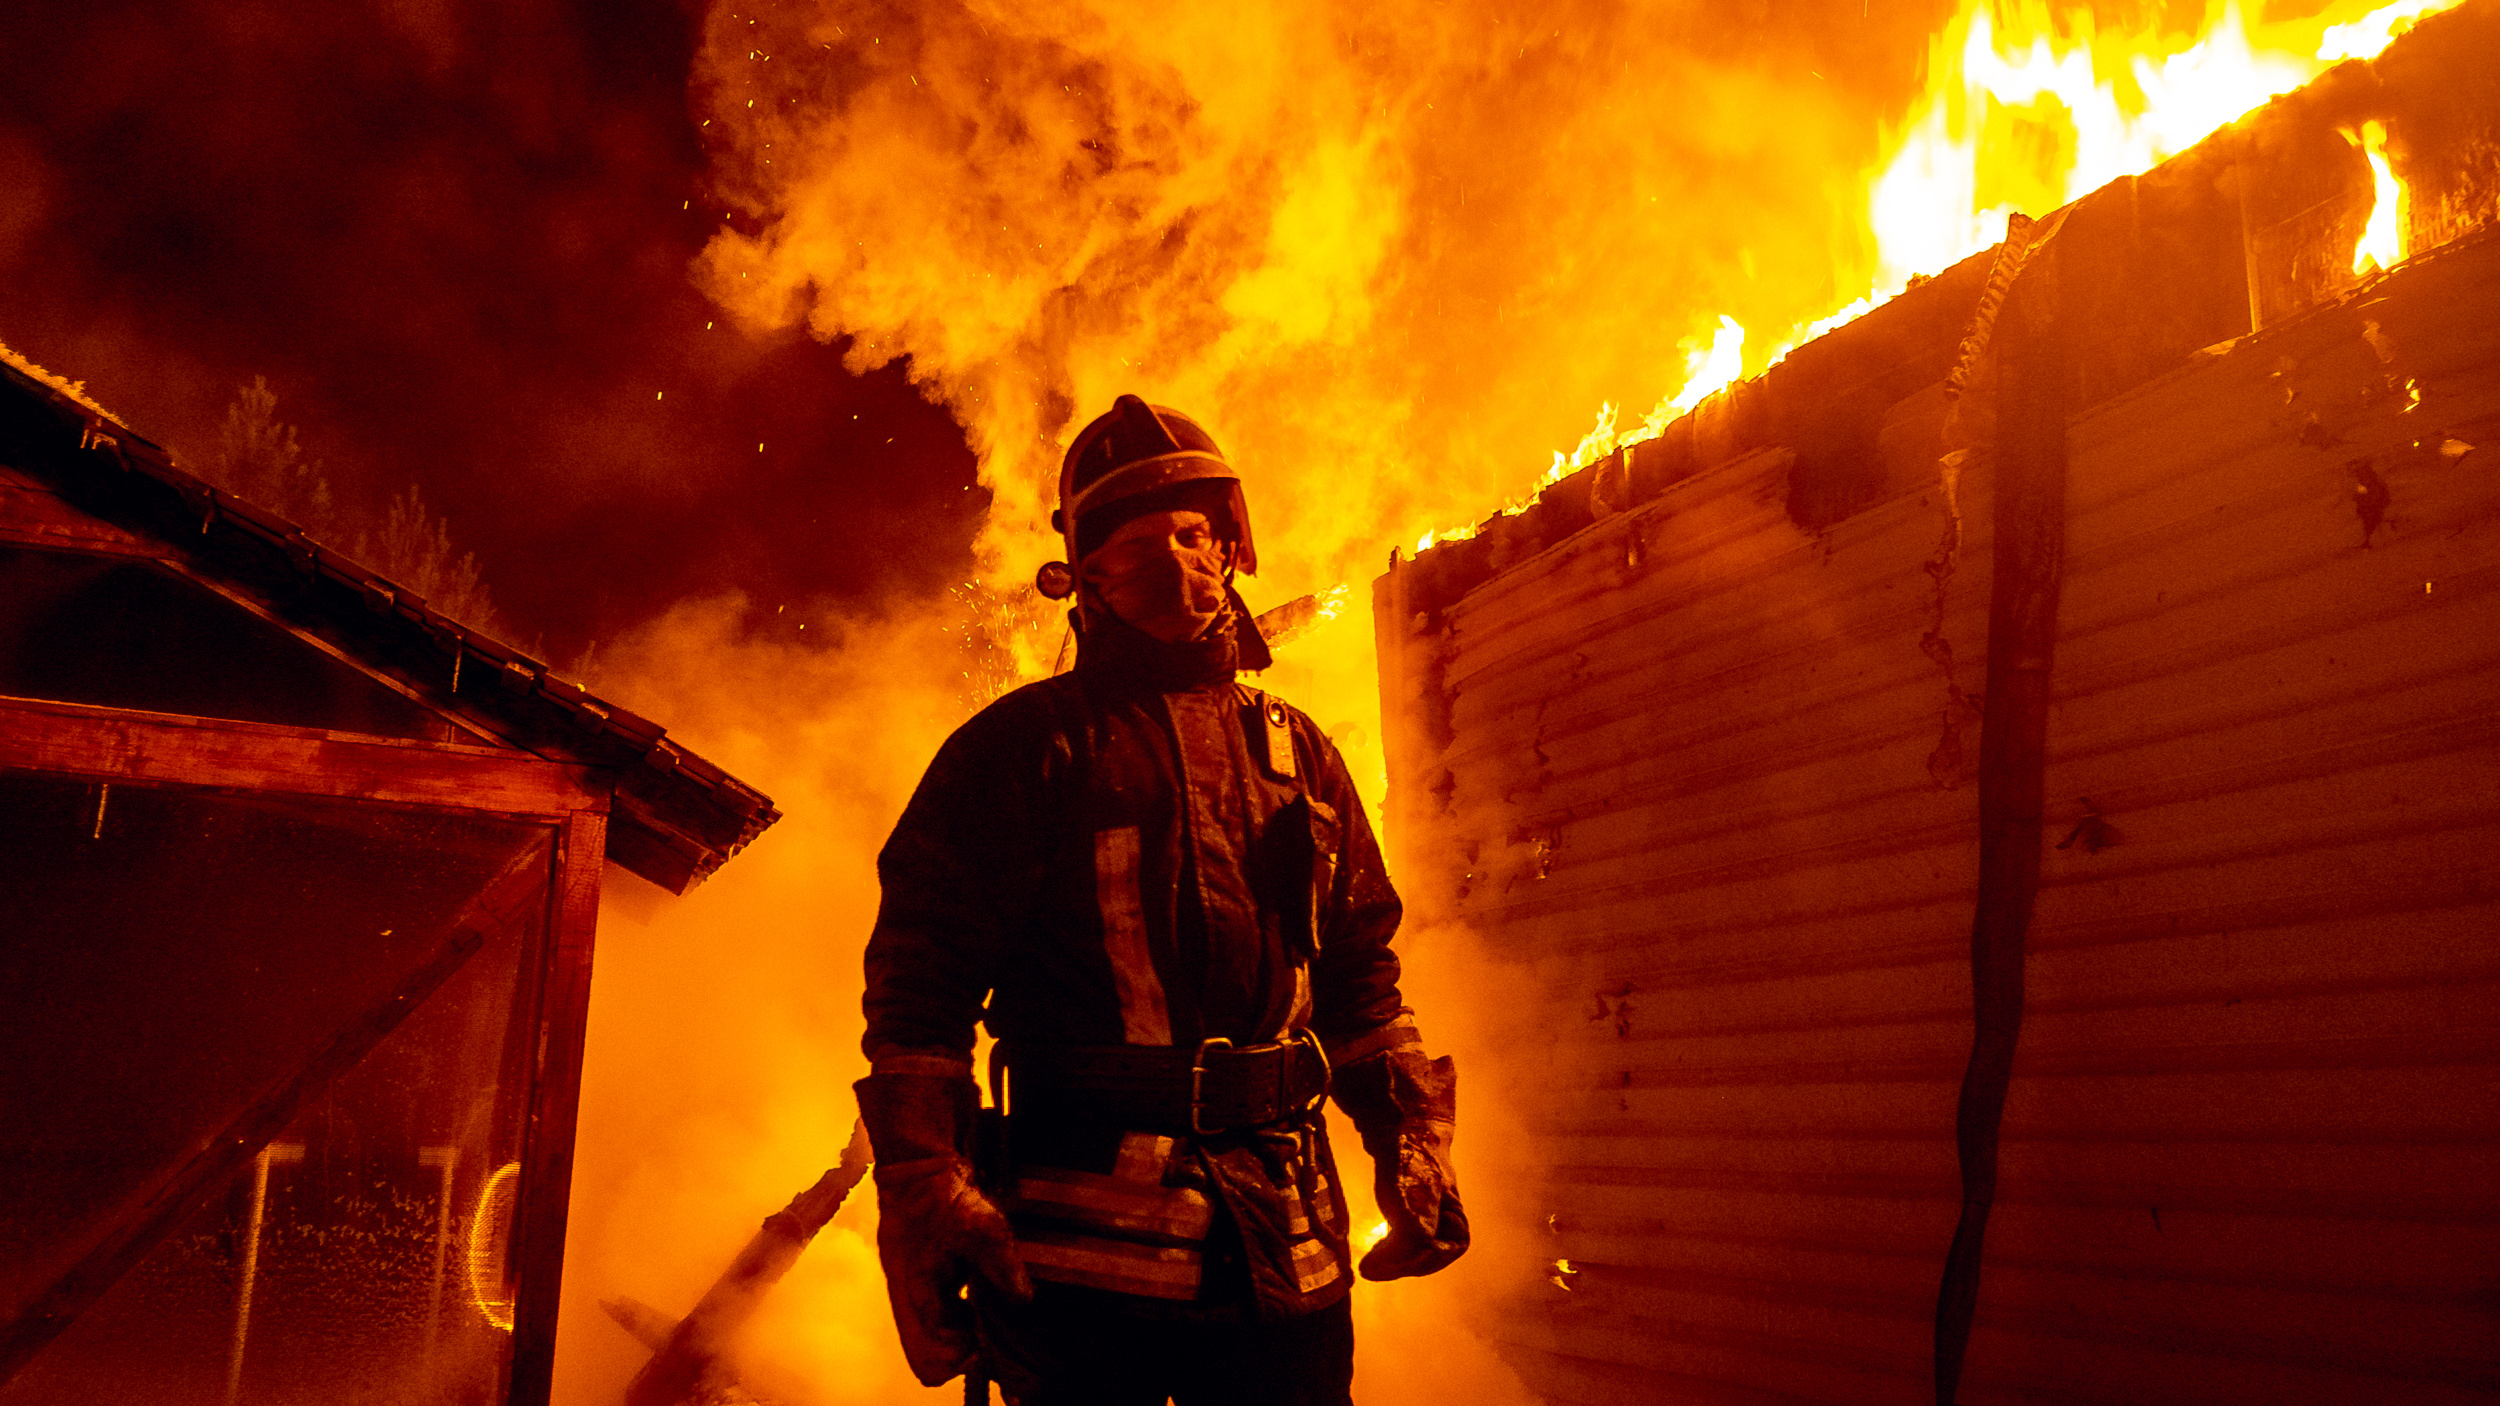 Снято во время пожара: спасатель фотографирует свою работу — посмотрите на эти огненные кадры